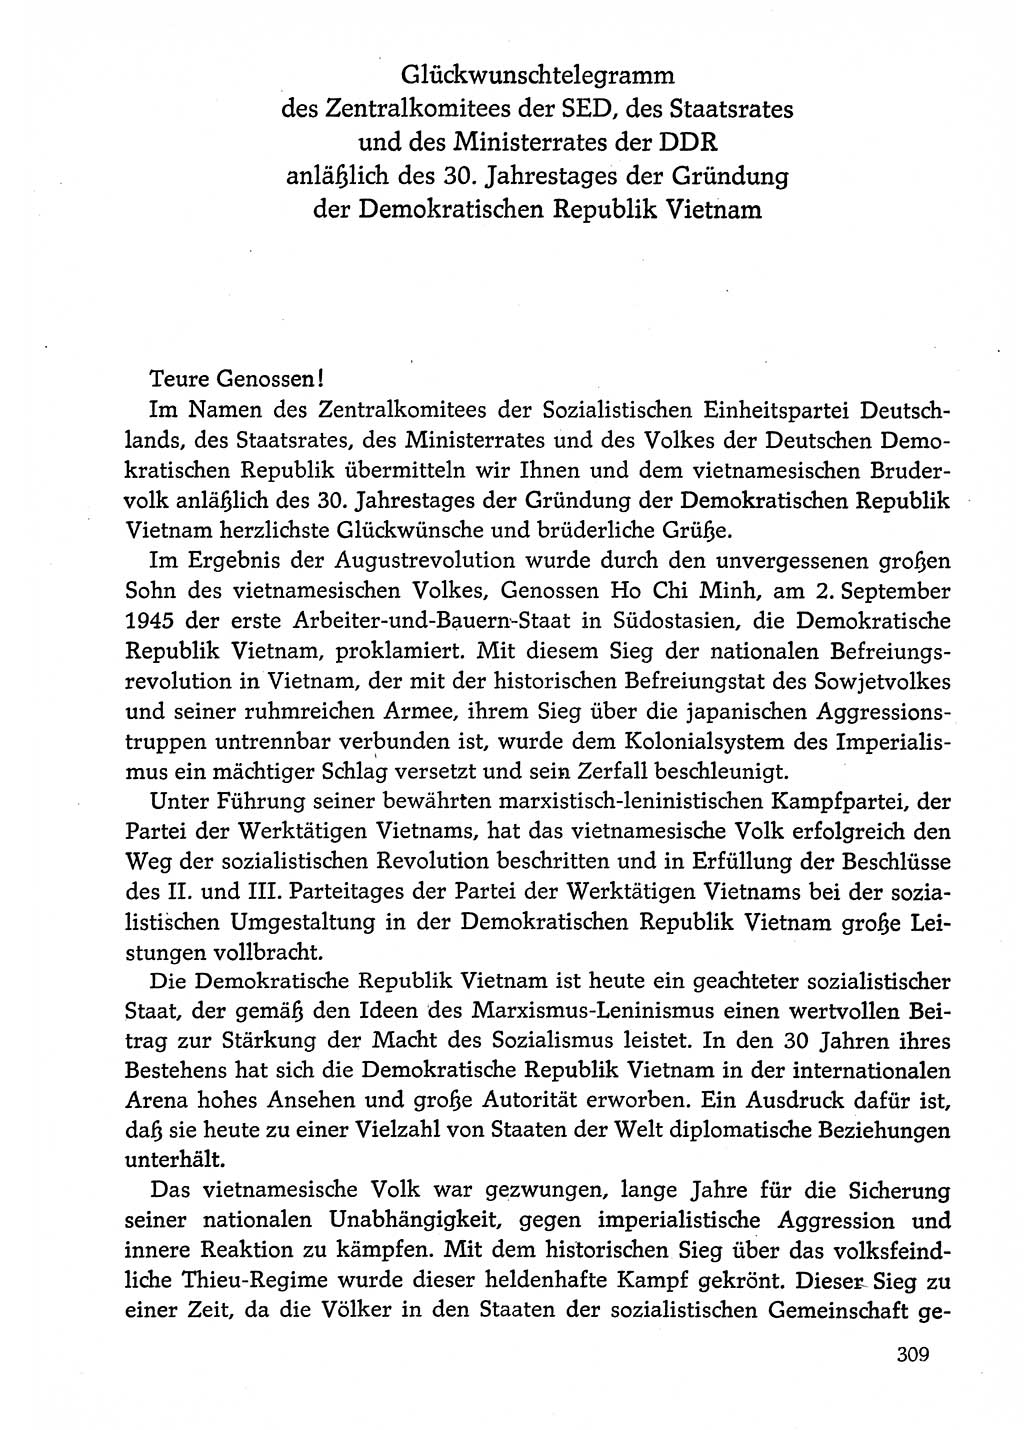 Dokumente der Sozialistischen Einheitspartei Deutschlands (SED) [Deutsche Demokratische Republik (DDR)] 1974-1975, Seite 309 (Dok. SED DDR 1978, Bd. ⅩⅤ, S. 309)